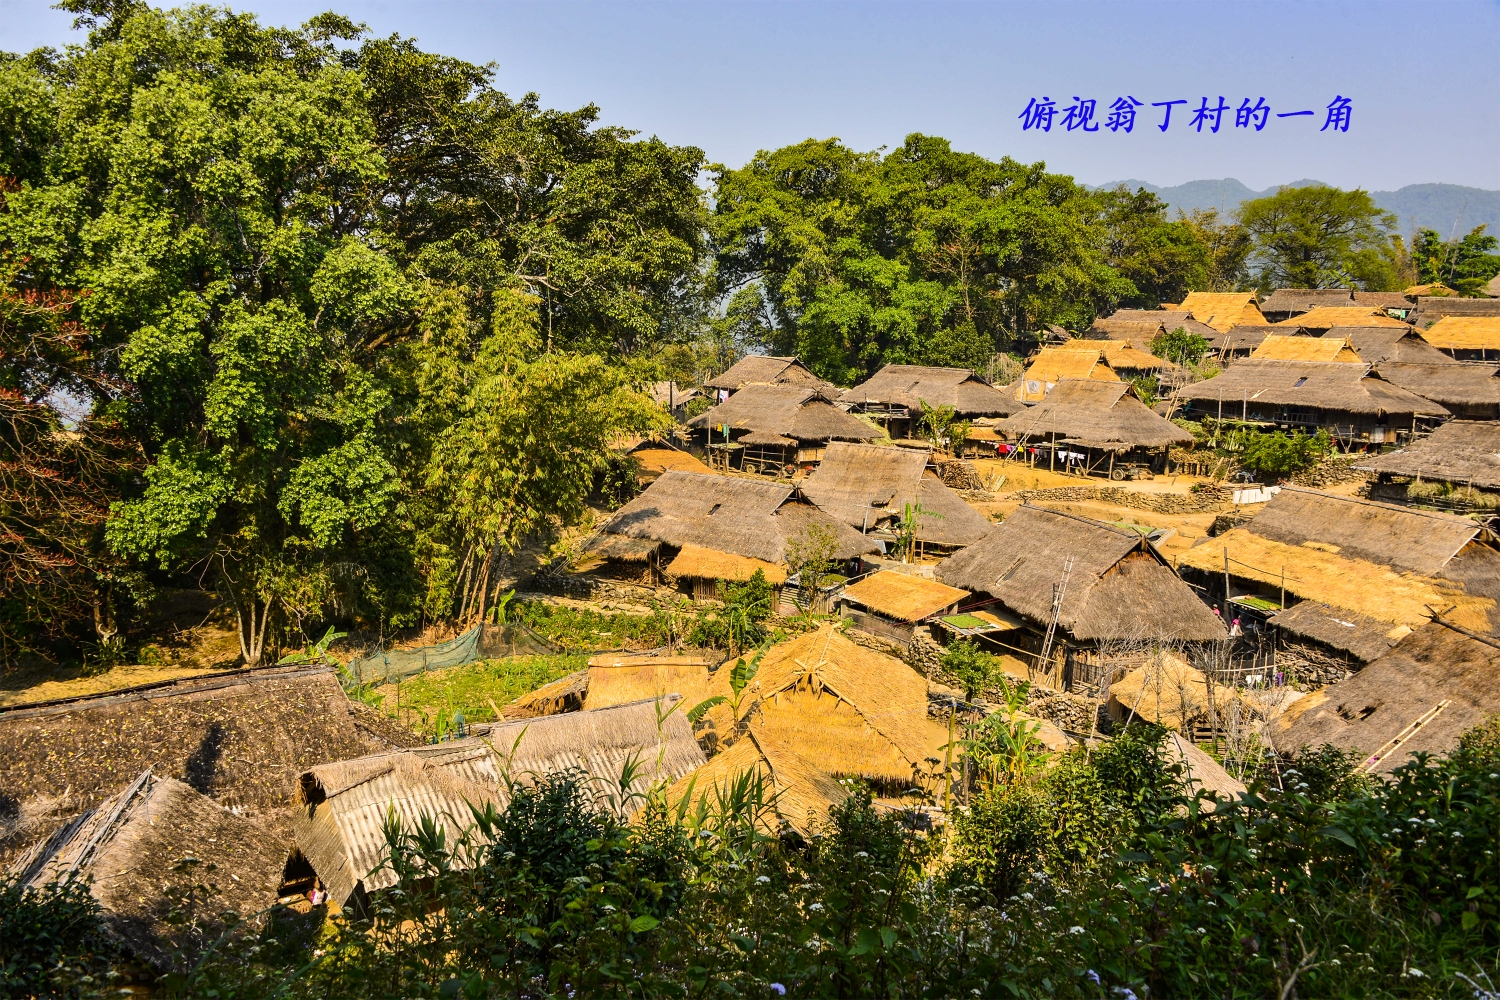 中国最后一个原始部落翁丁村